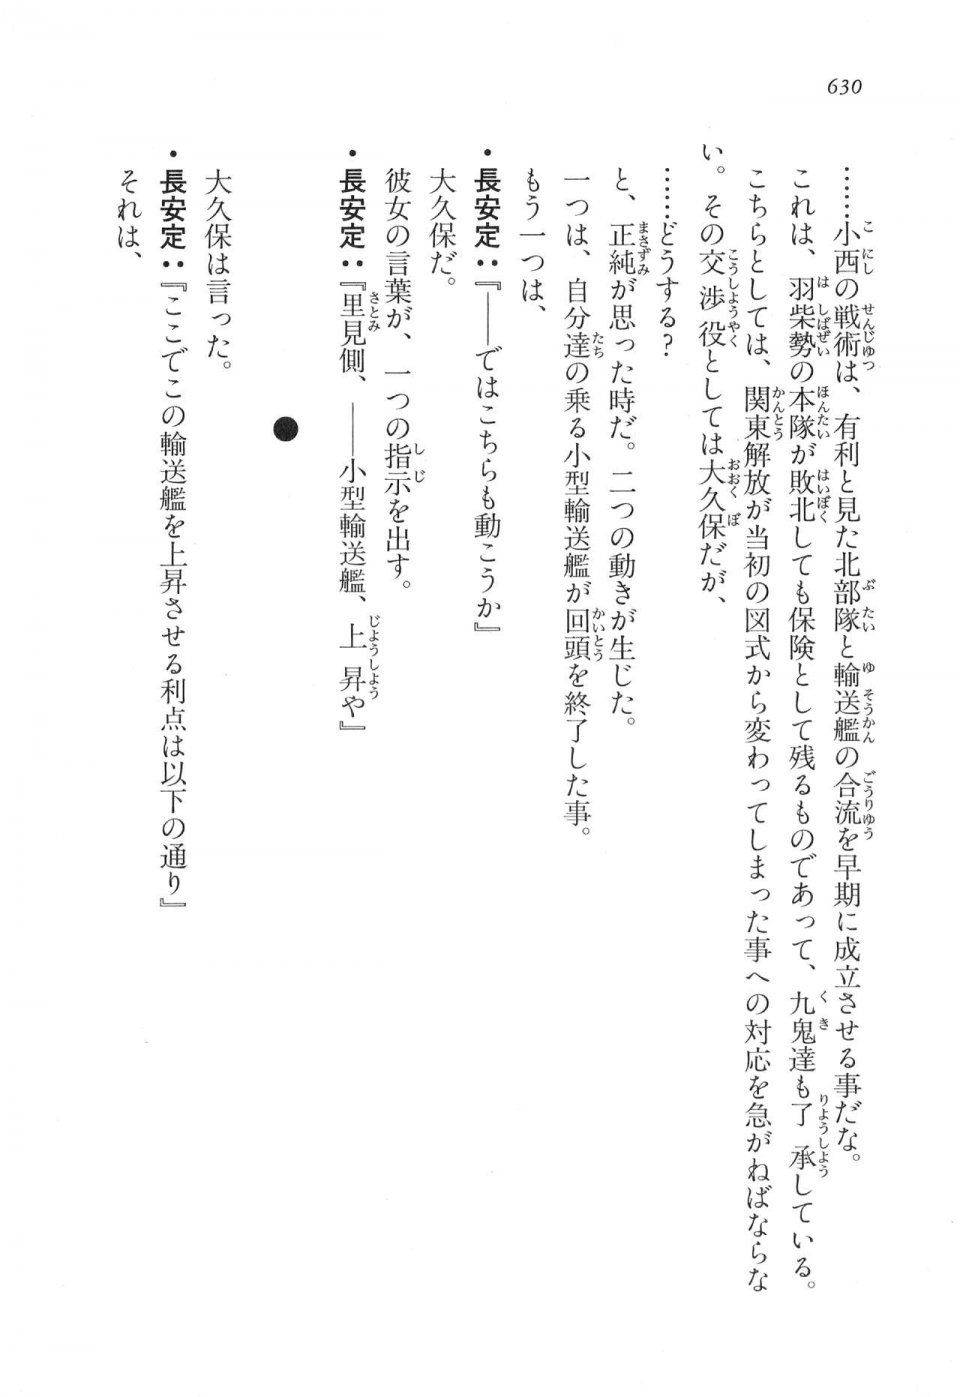 Kyoukai Senjou no Horizon LN Vol 17(7B) - Photo #632